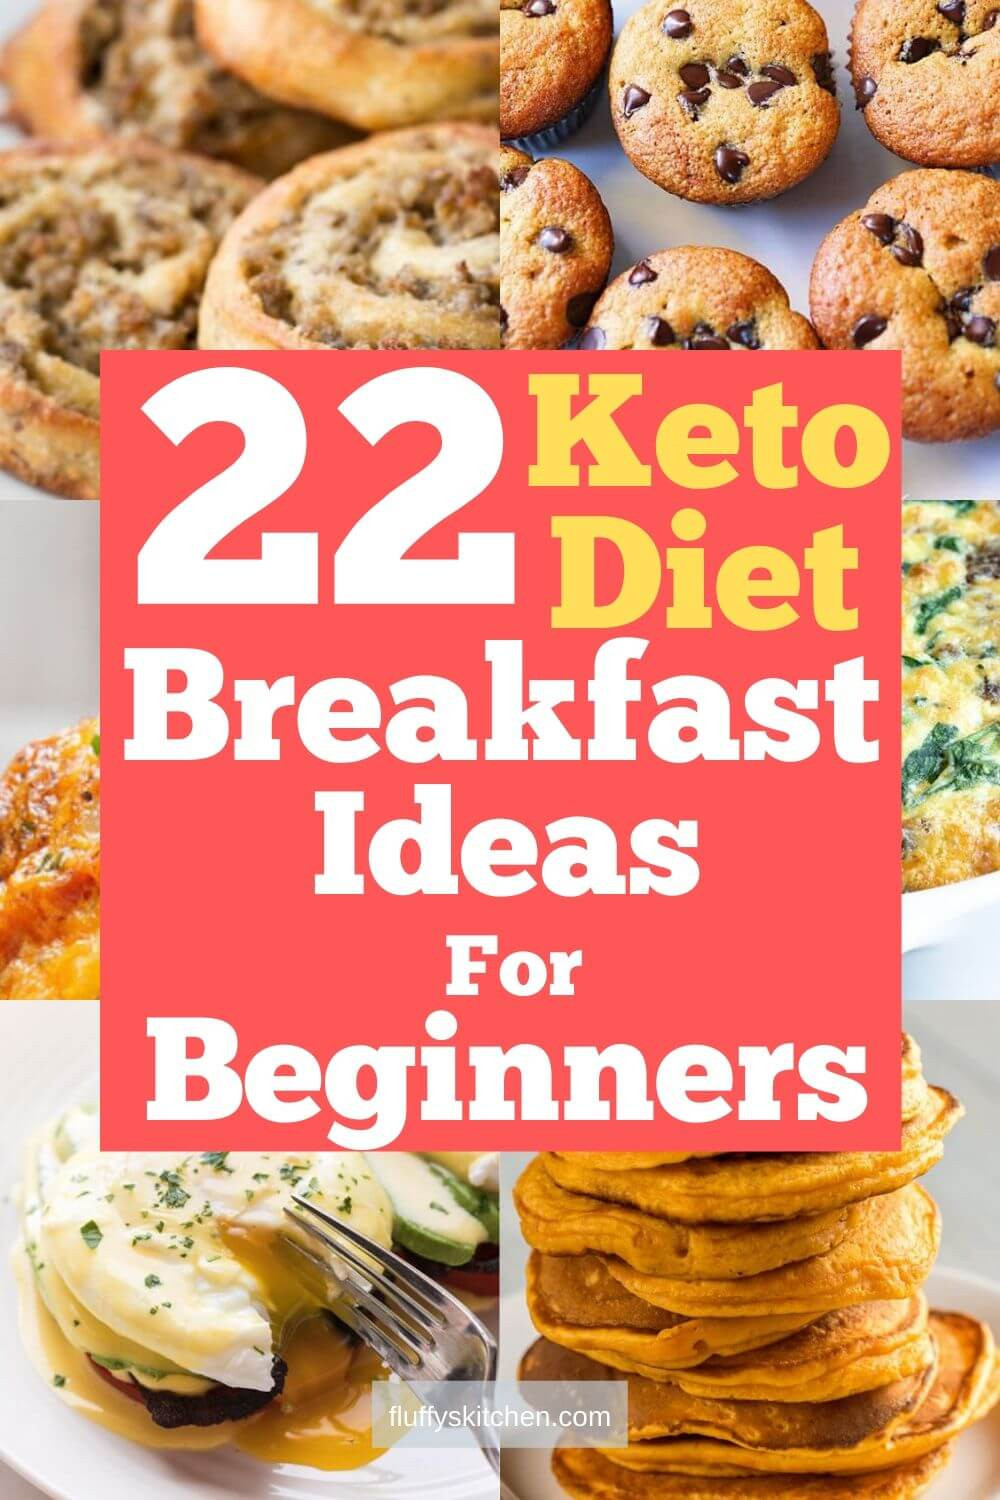 Keto Breakfast Ideas For Beginners
 22 Keto Diet Breakfast Ideas For Beginners Fluffy s Kitchen